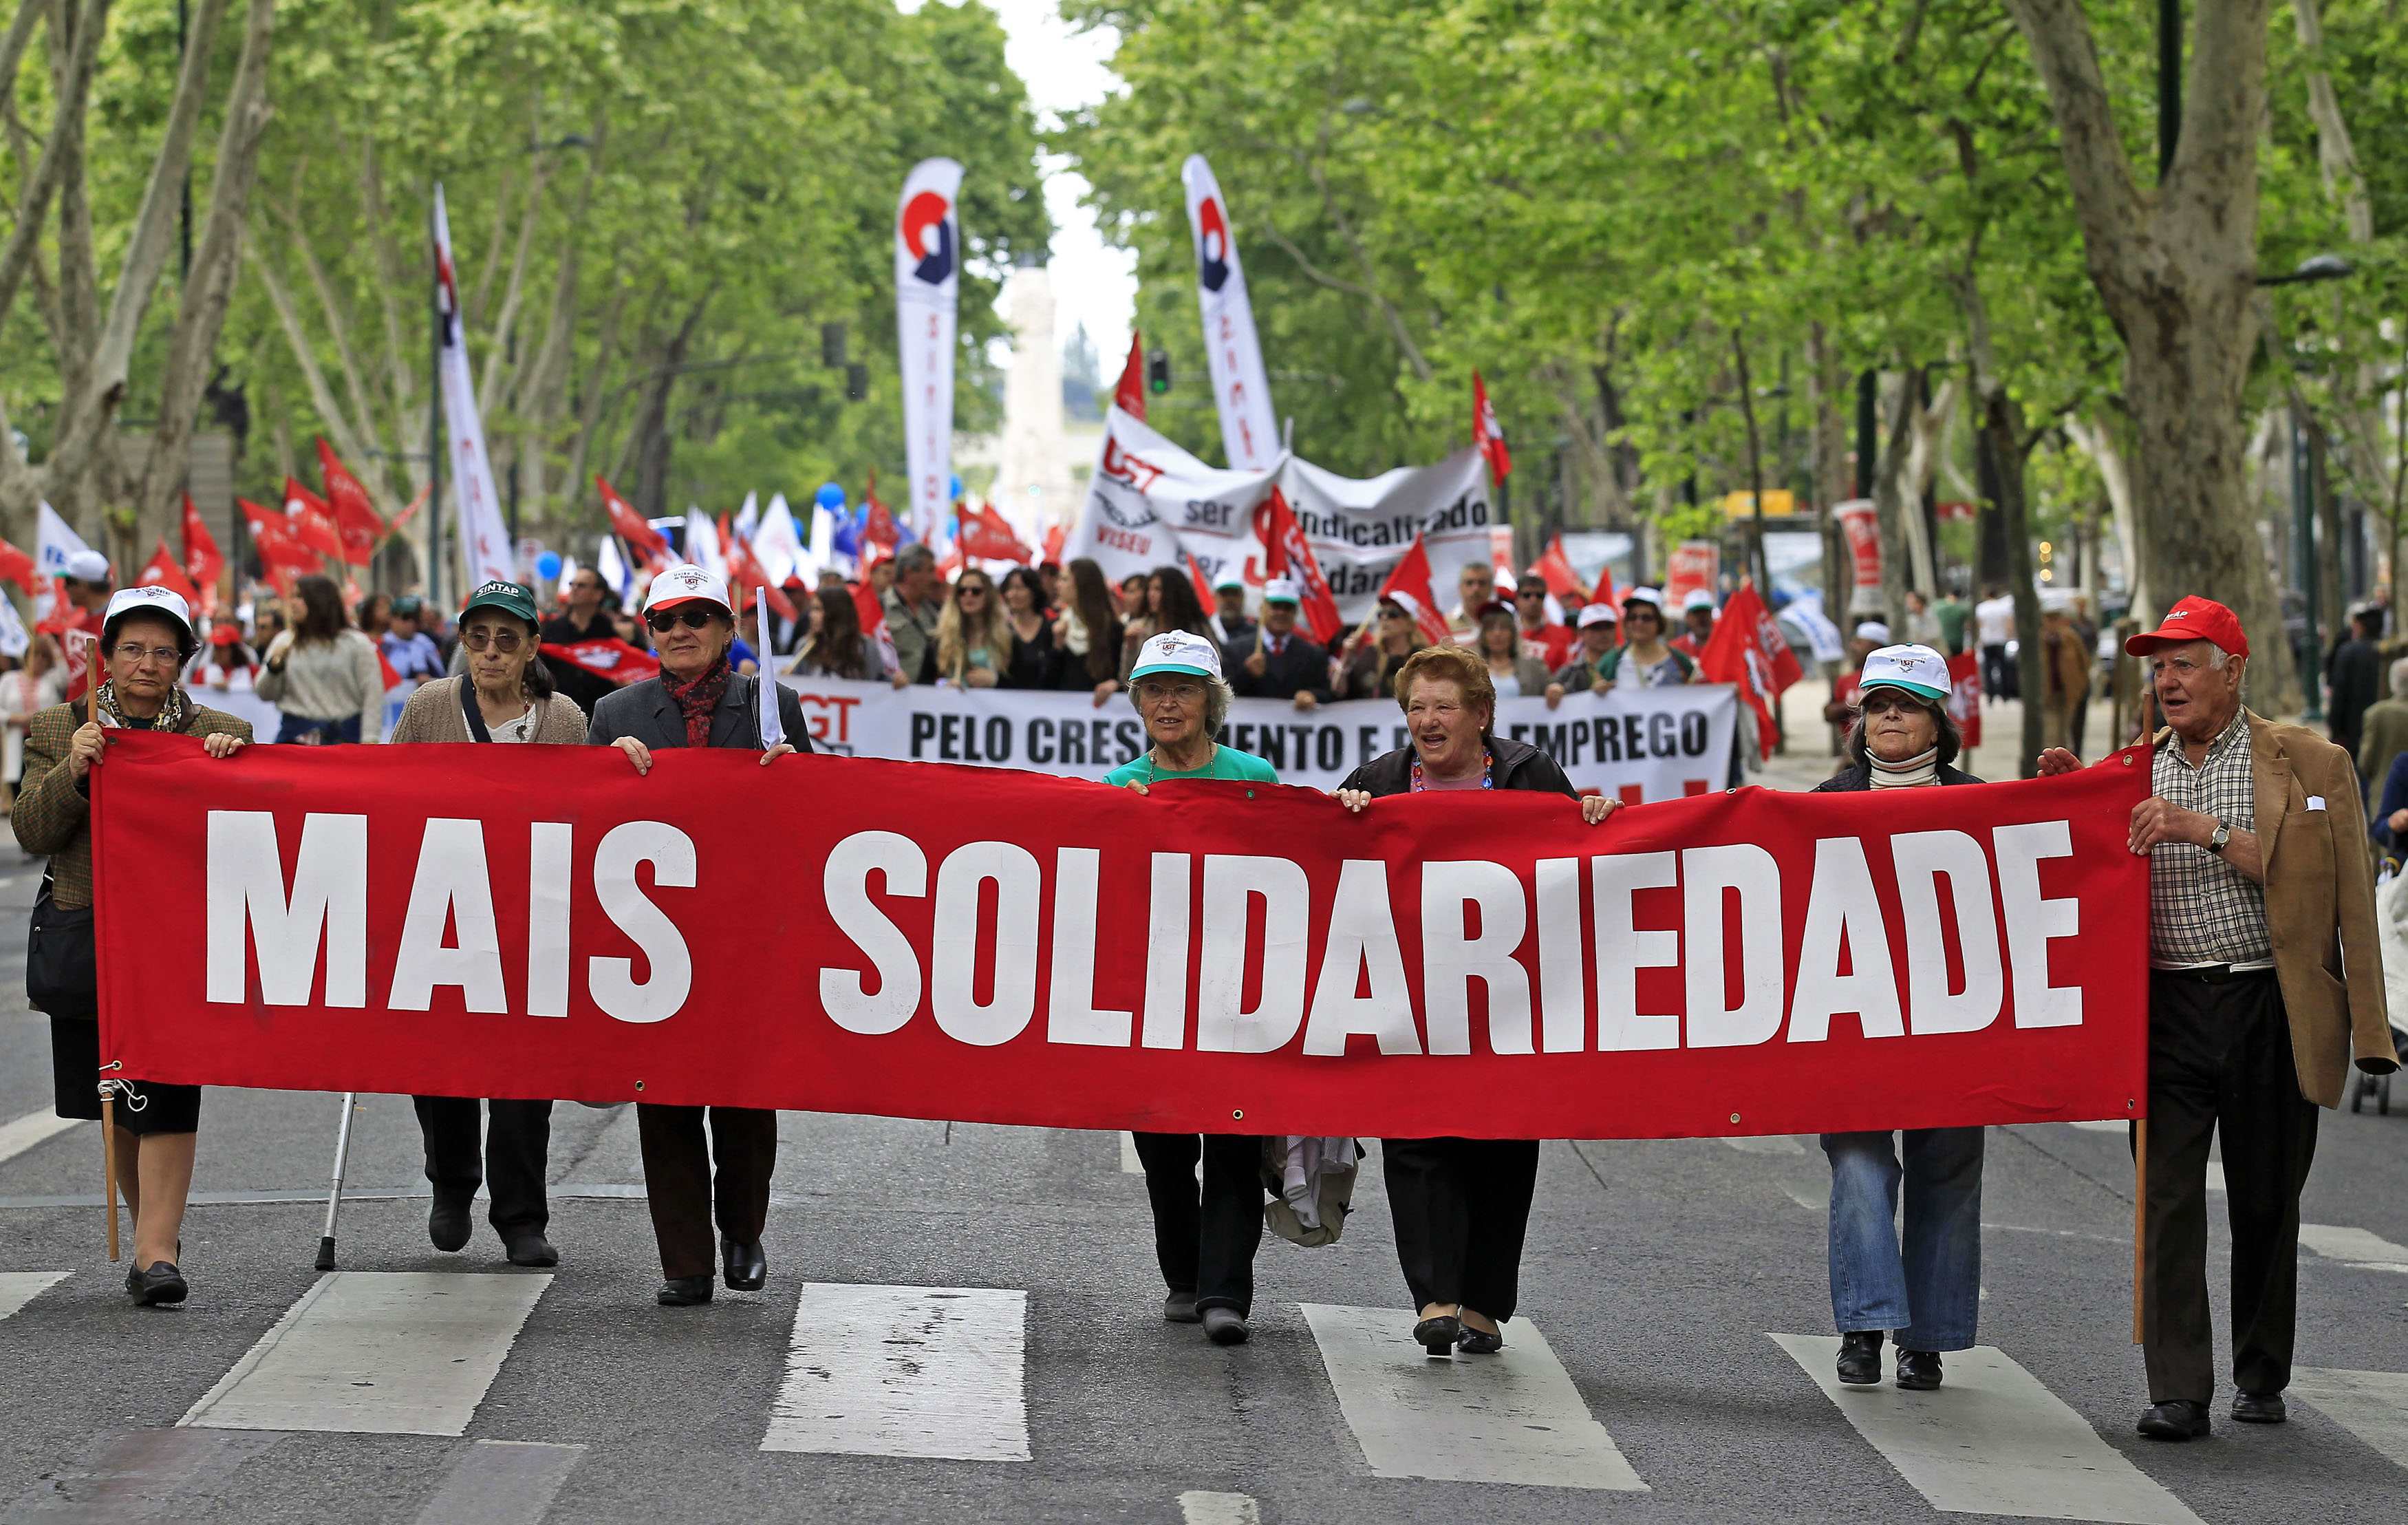 “Έξω η Τρόικα” ήταν το μήνυμα των διαδηλωτών στη Λισαβόνα